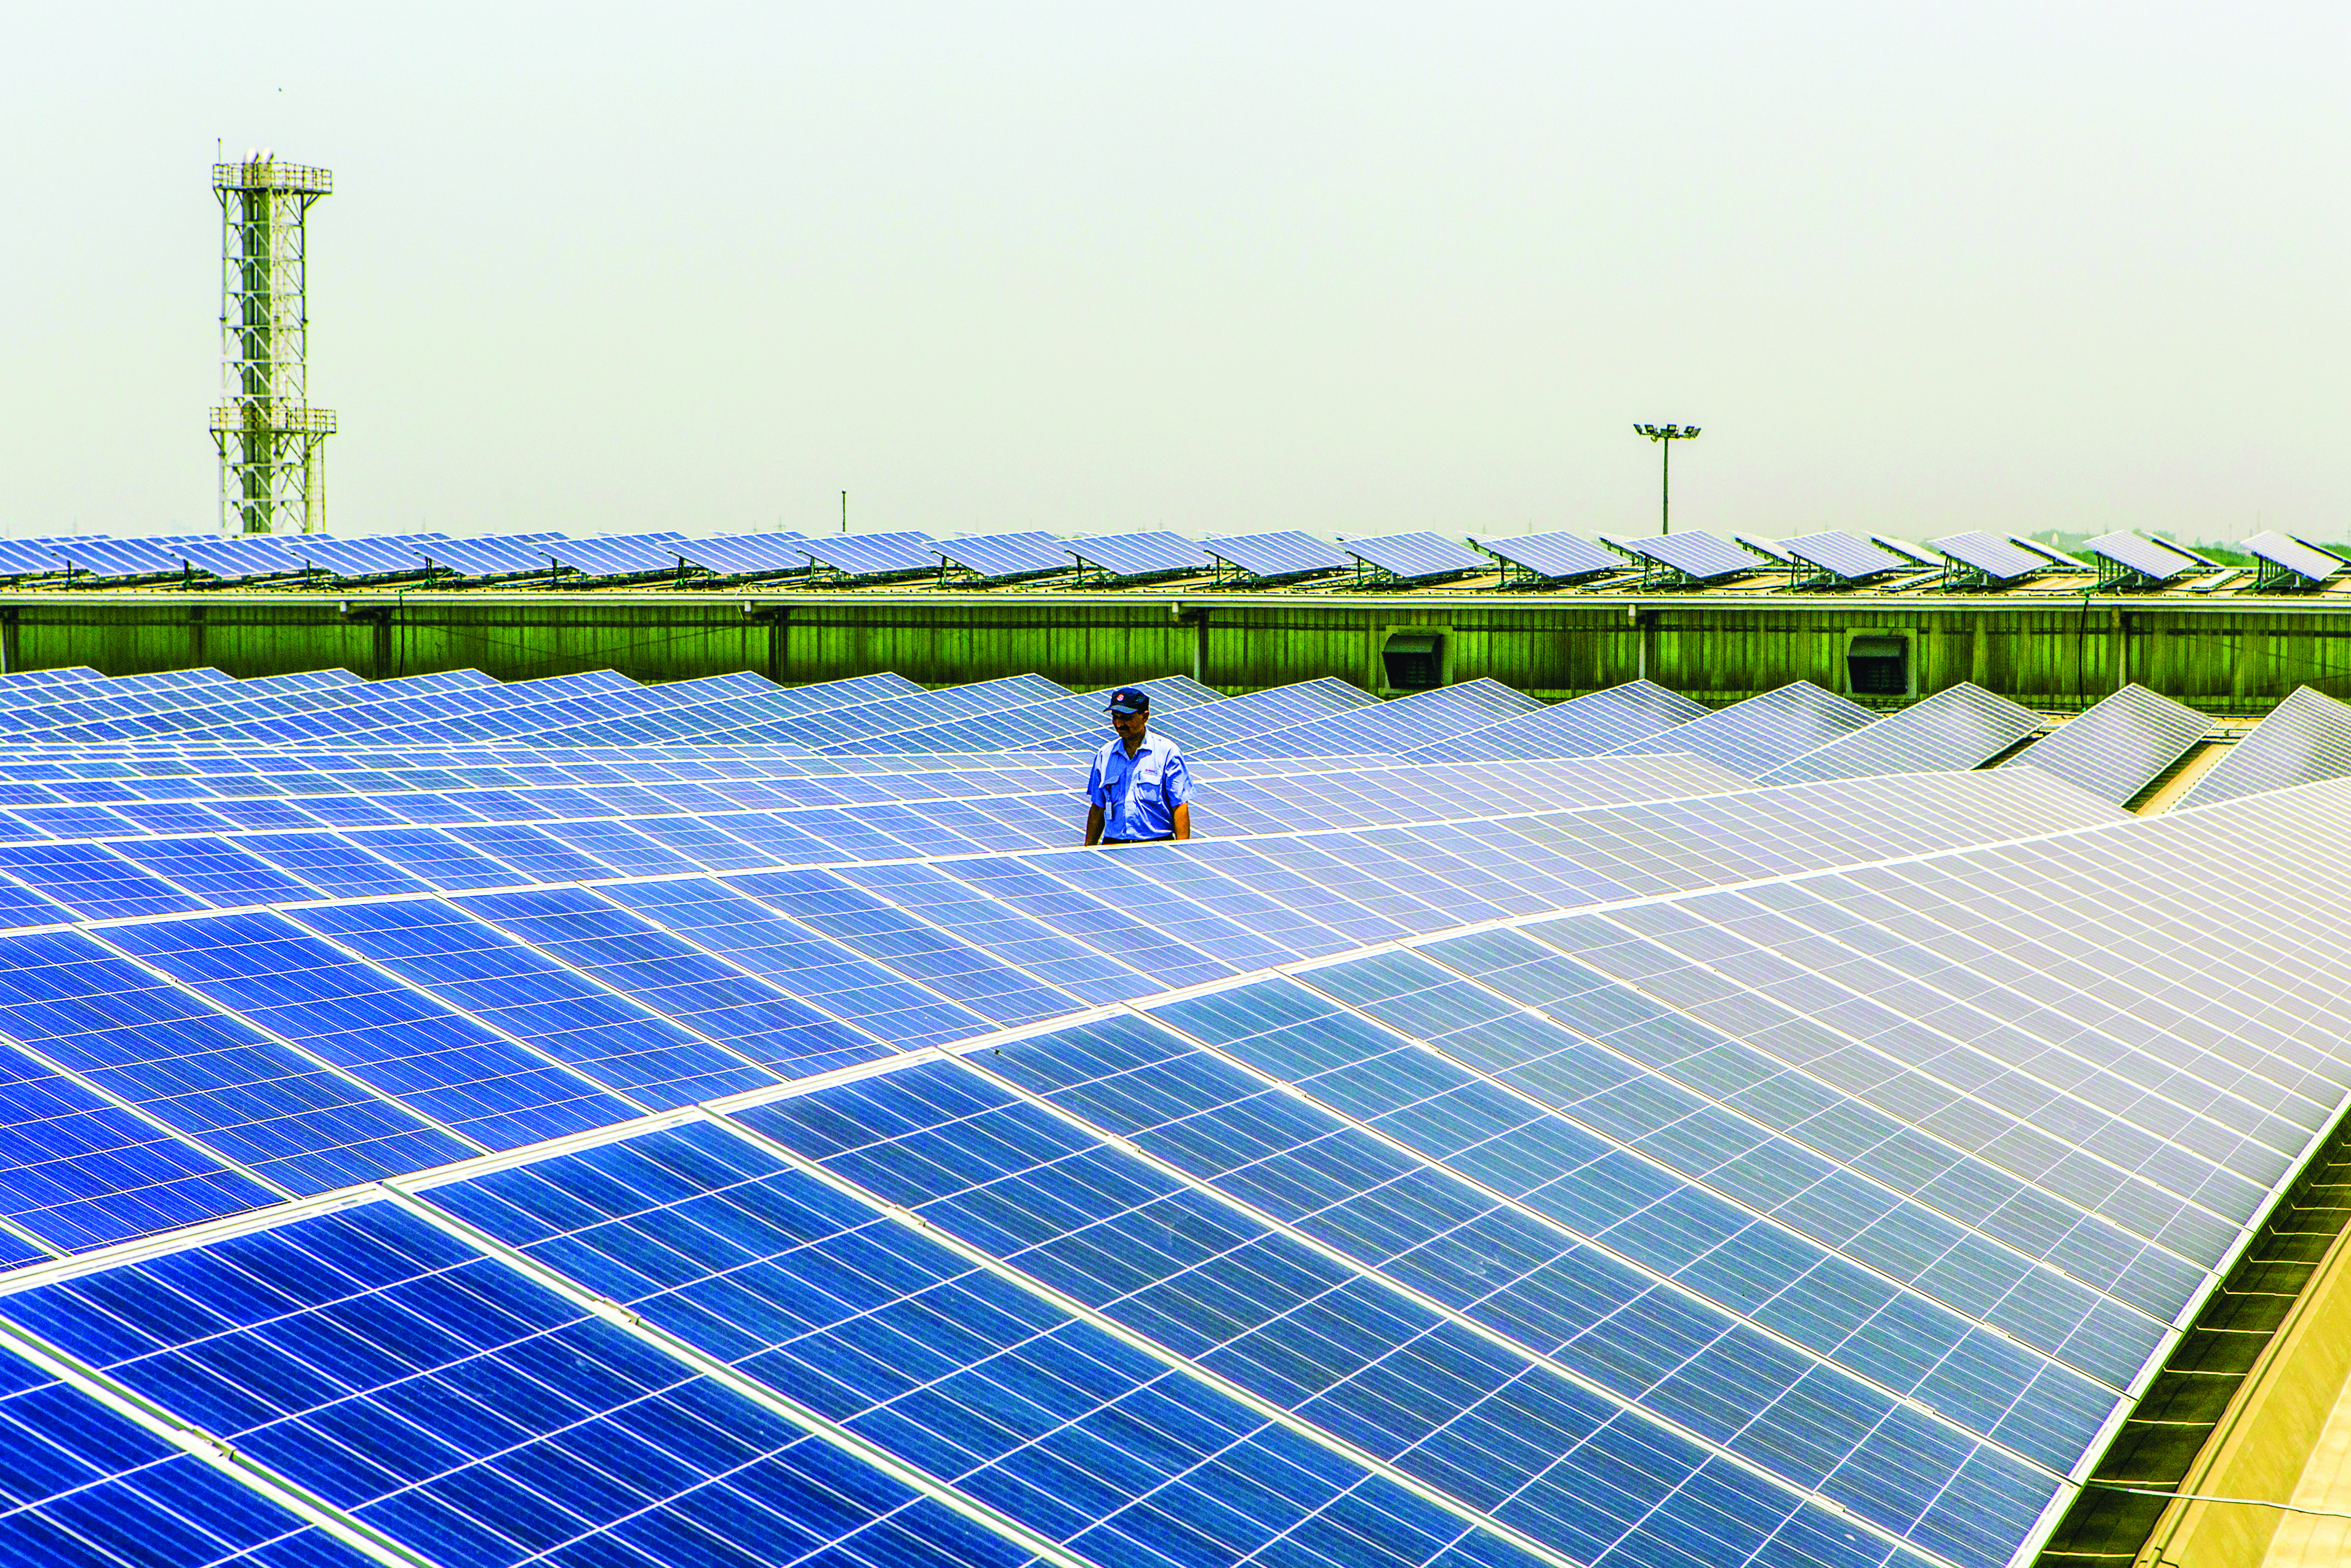 Dubai starts desert solar plant as part of world's biggest park